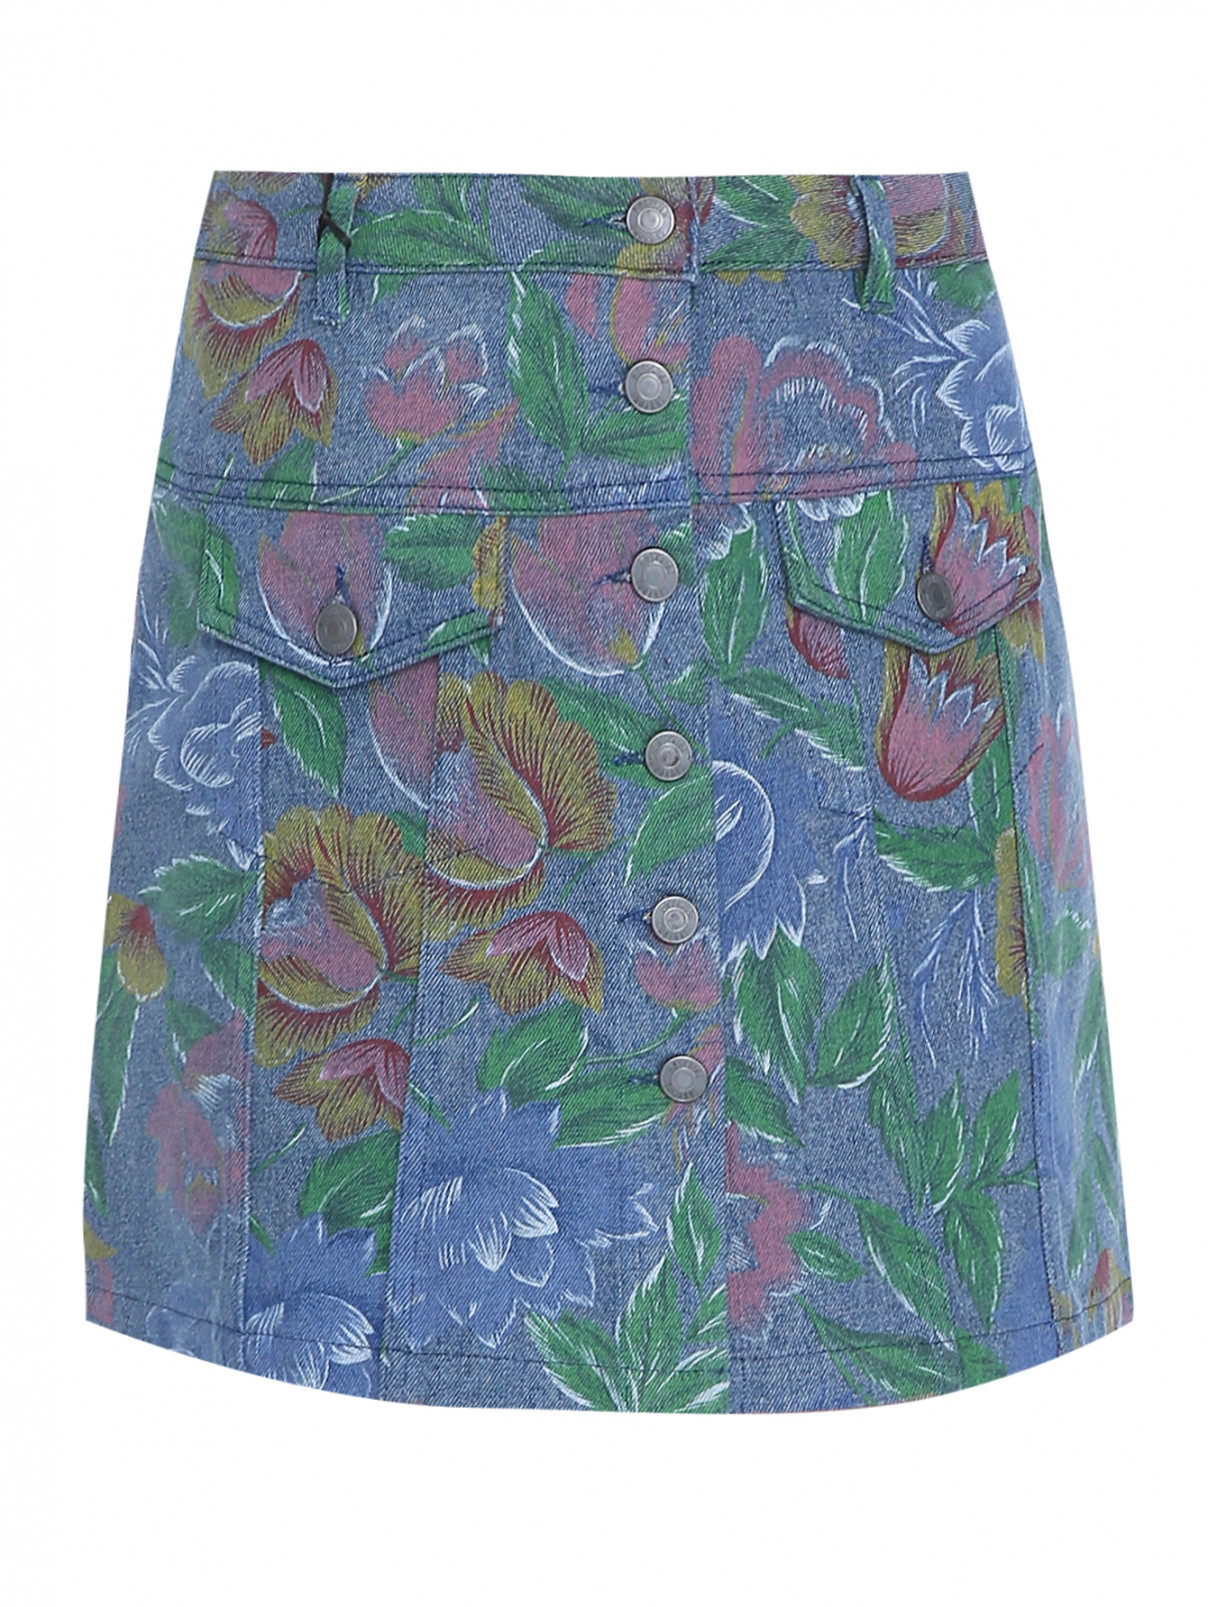 Джинсовая юбка-мини с узором Moschino  –  Общий вид  – Цвет:  Синий